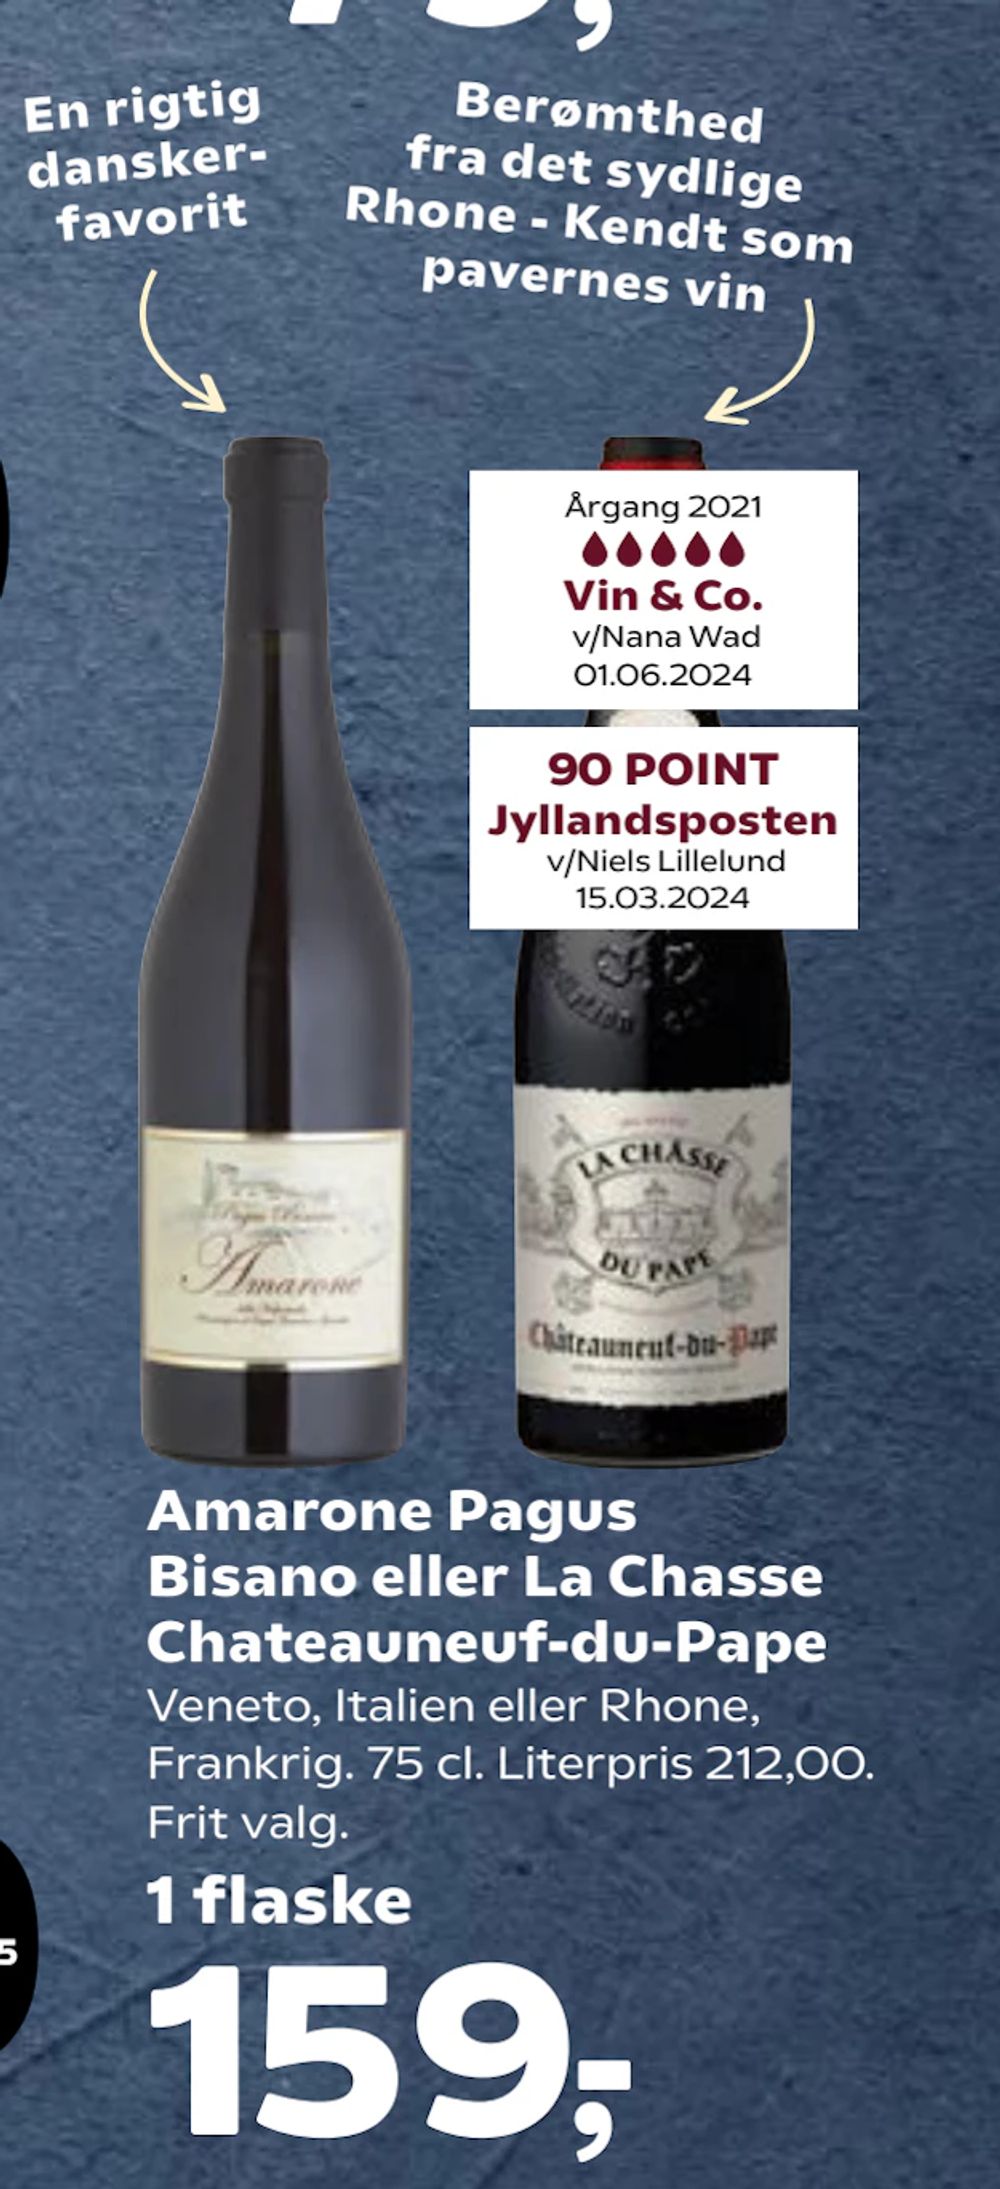 Tilbud på Amarone Pagus Bisano eller La Chasse Chateauneuf-du-Pape fra Kvickly til 159 kr.